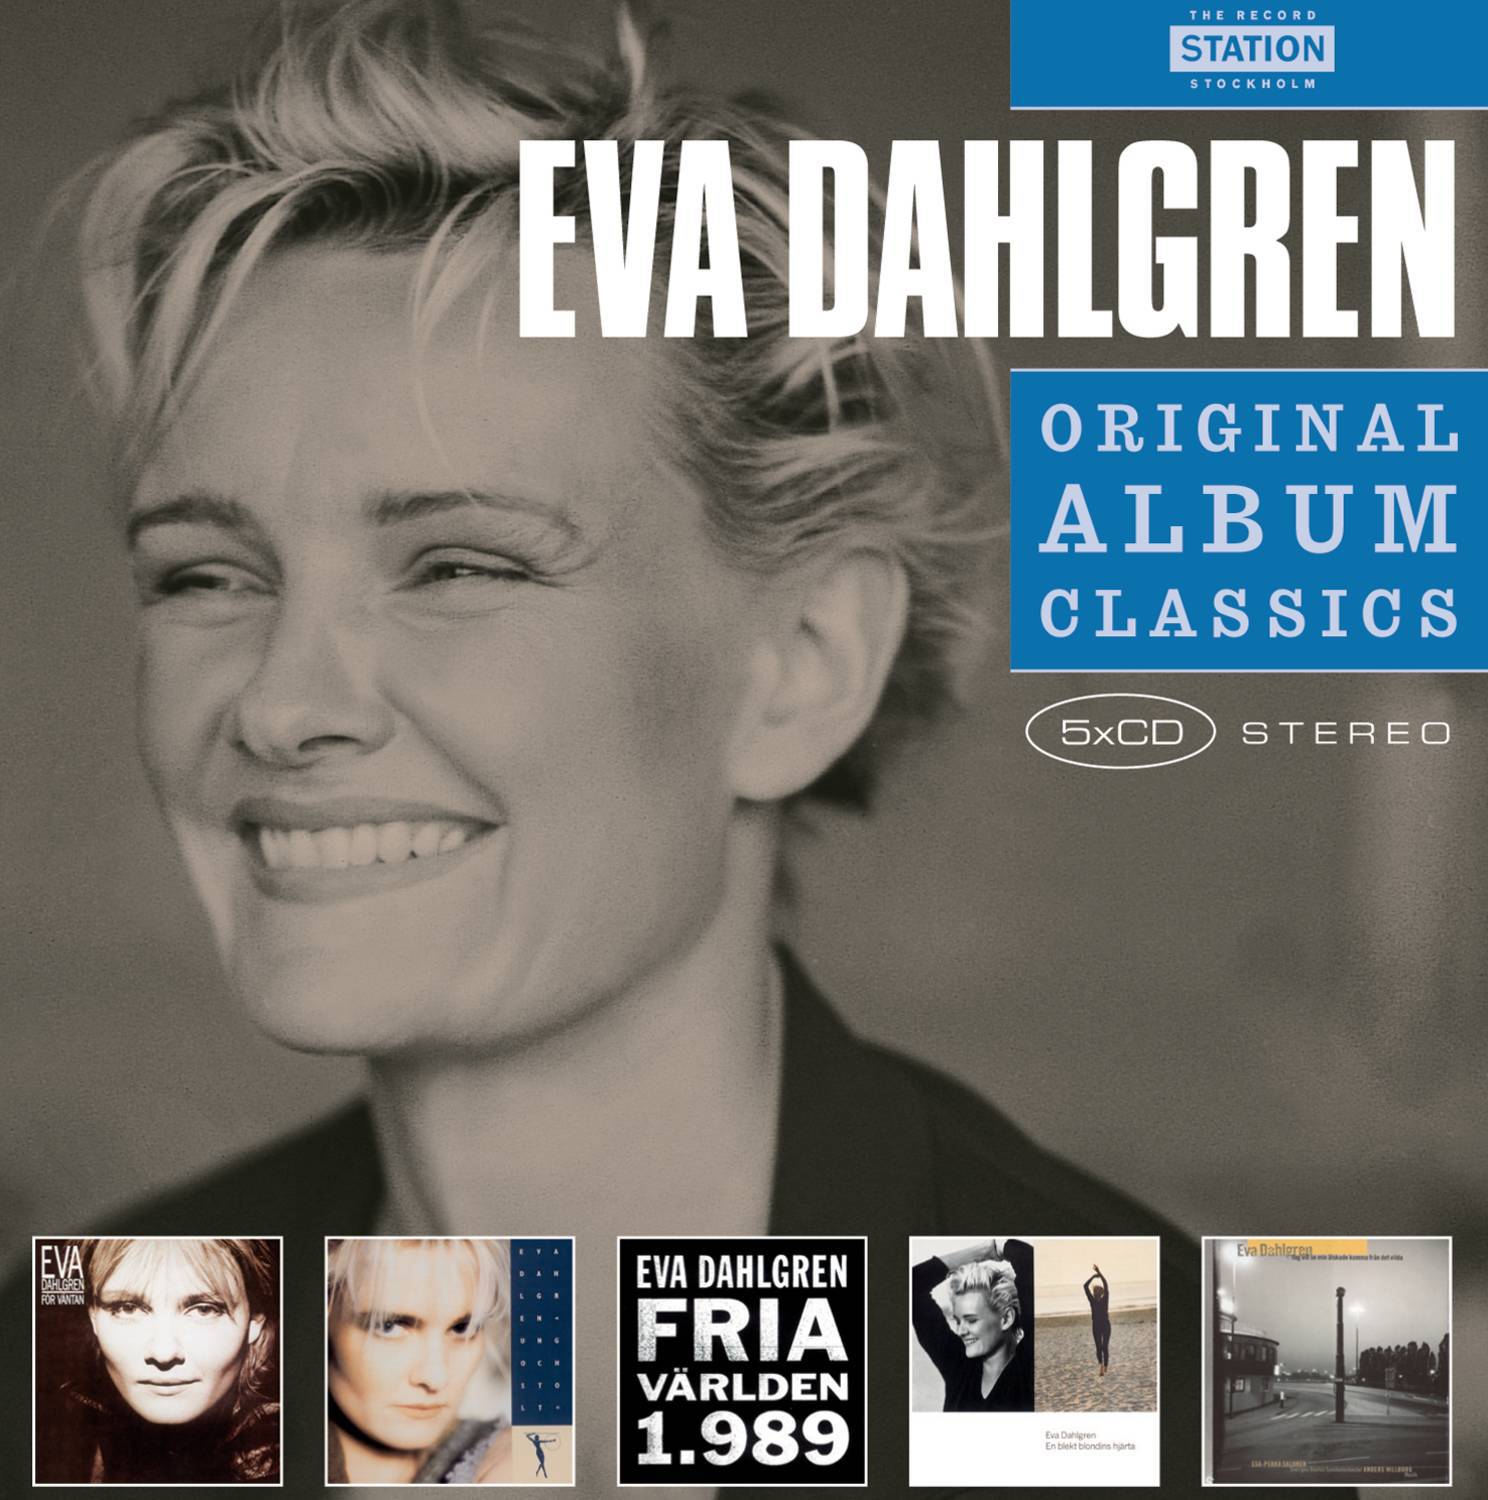 Eva Dahlgren - Ängeln i rummet